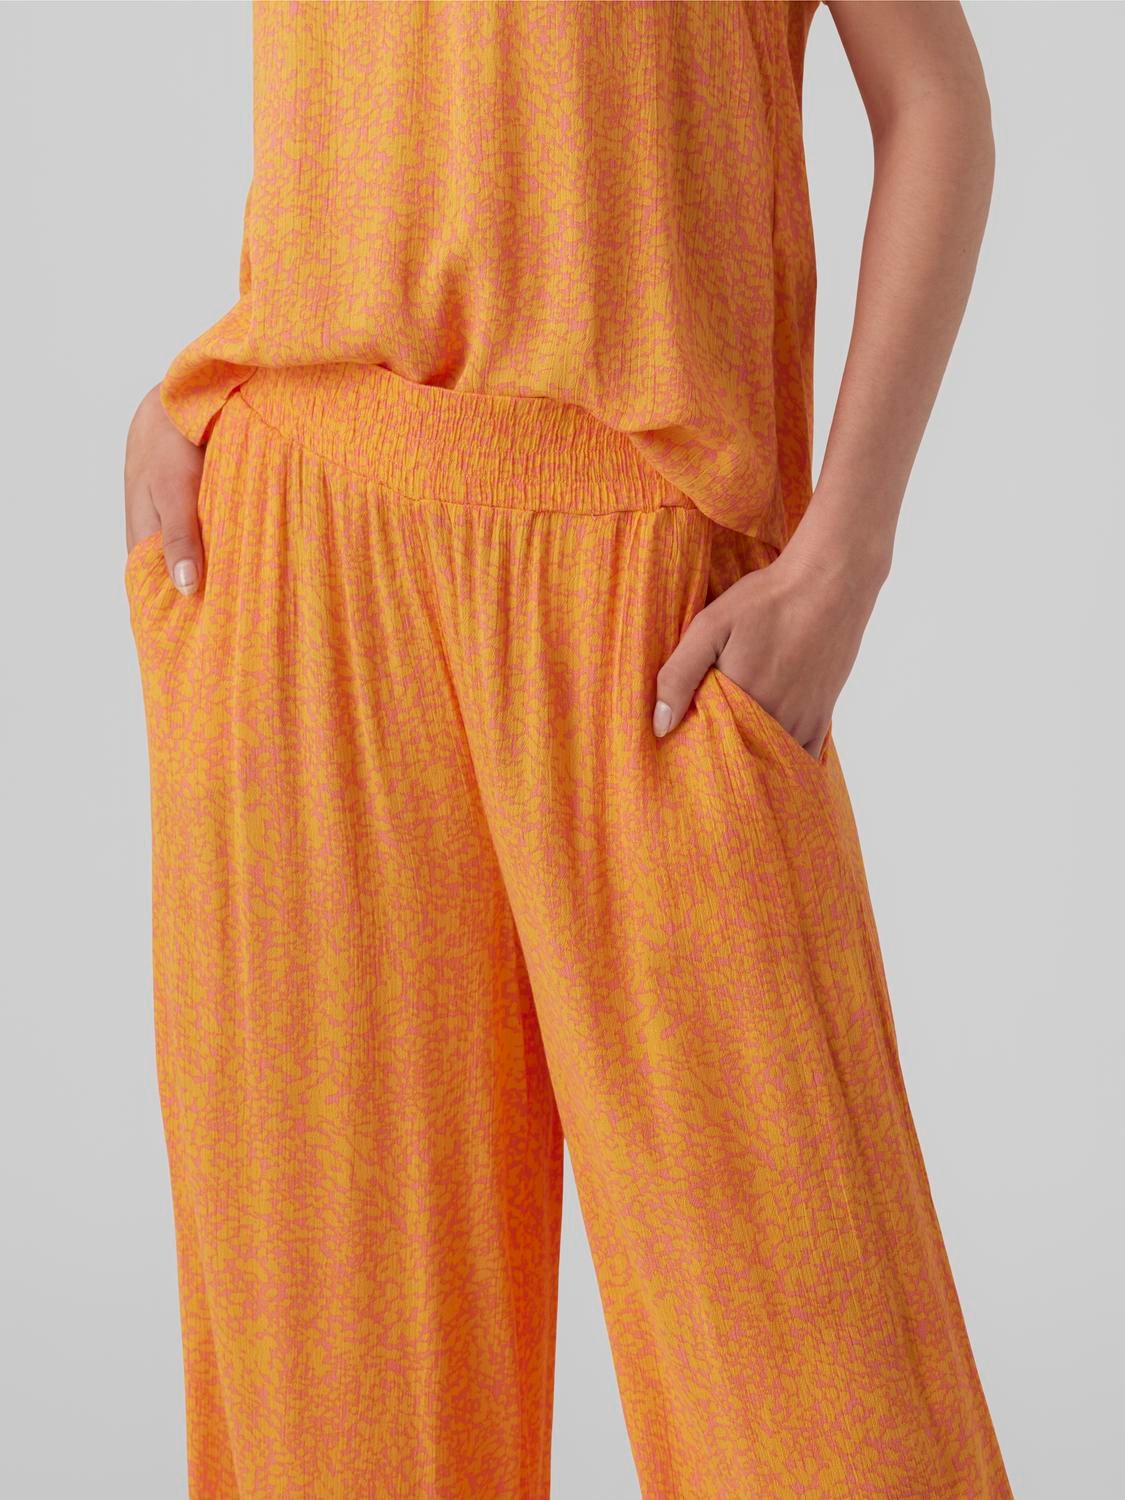 Vero Moda VMMENNY High rise Trousers -Georgia Peach - 10282478